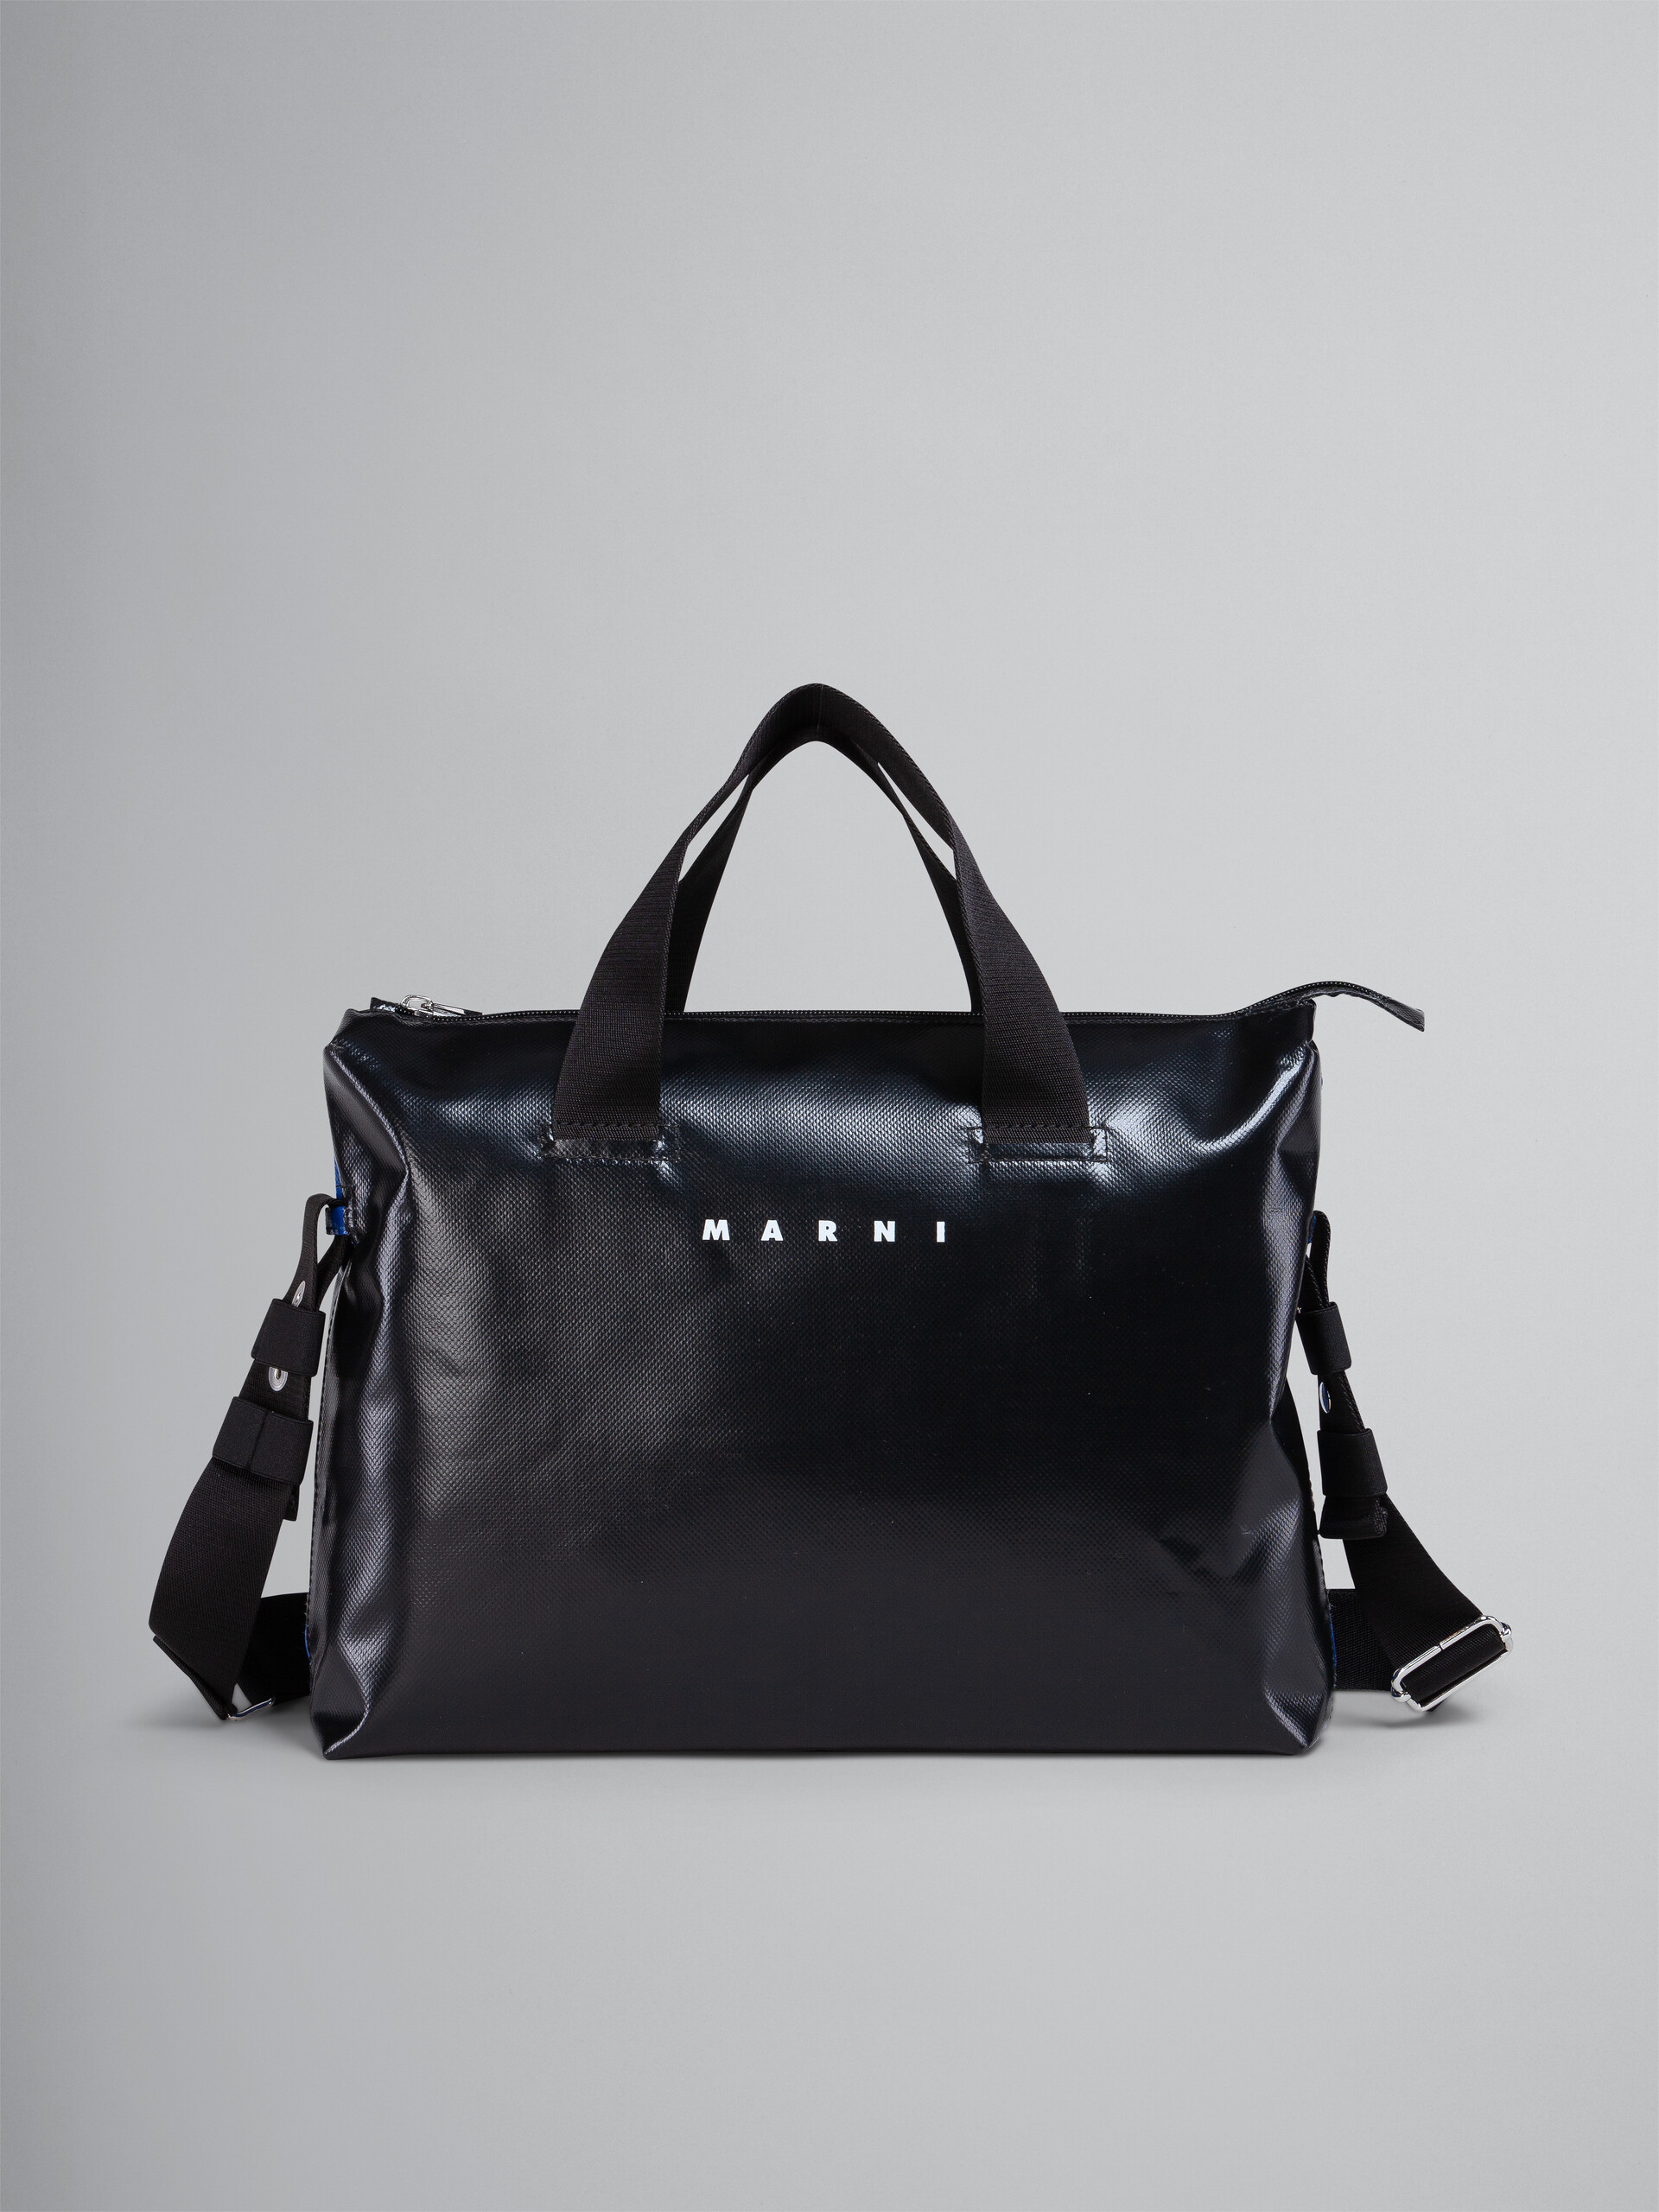 Black and blue TRIBECA bag - Handbags - Image 1